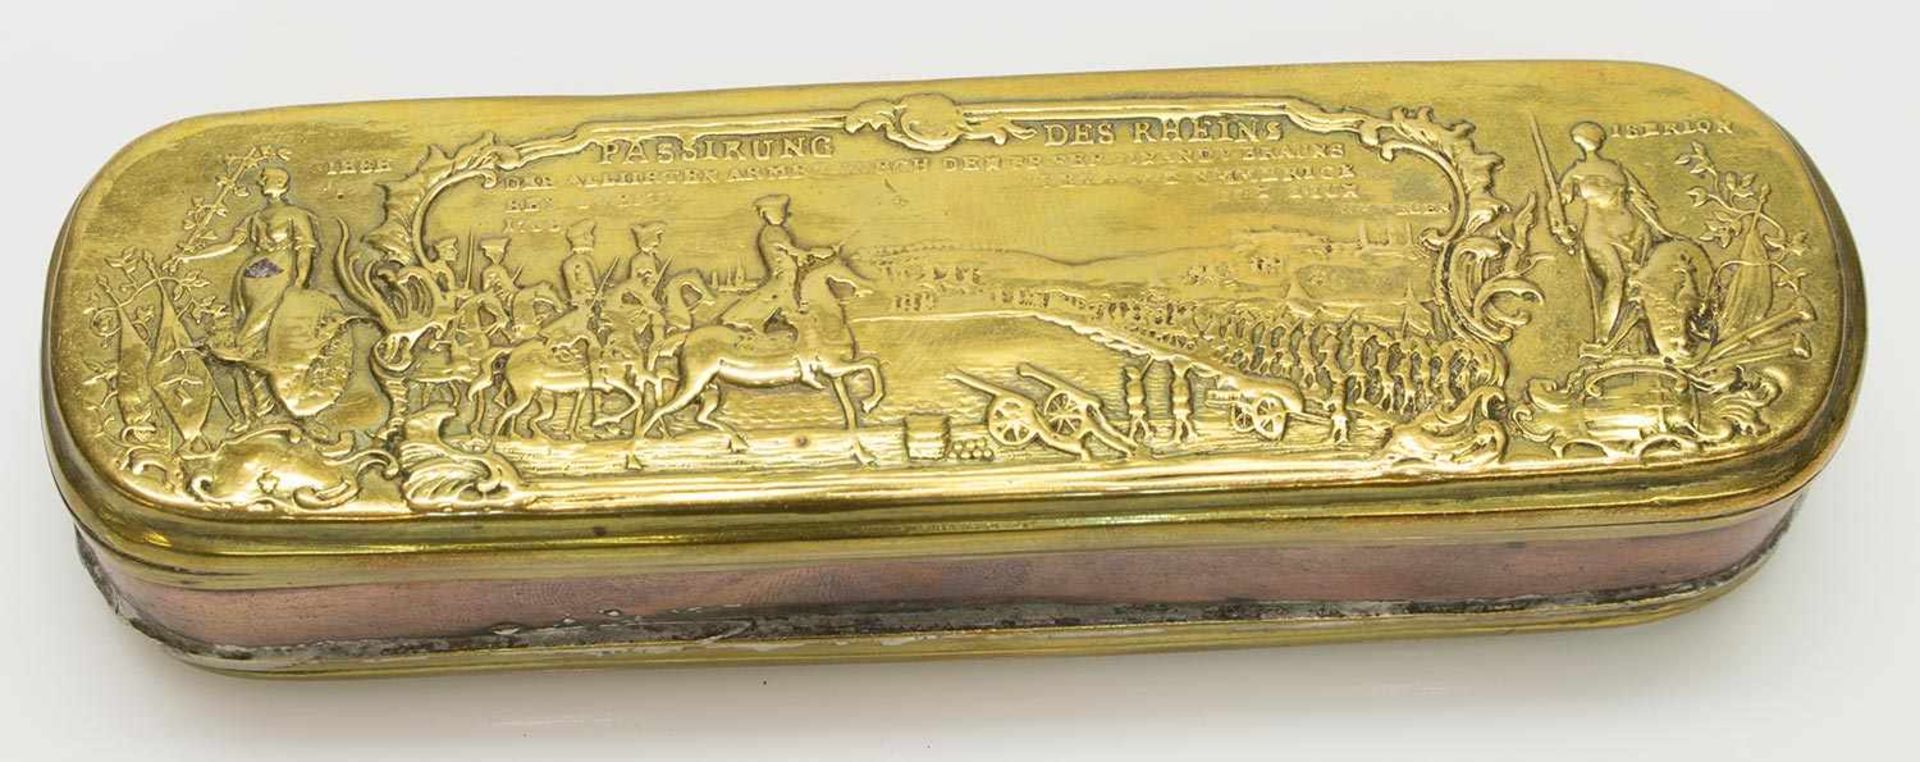 TabakdoseIserlohn um 1760, gemarkt Giese/ Iserlohn (Johann Heinrich Giese 1716-1761), Kupfer/